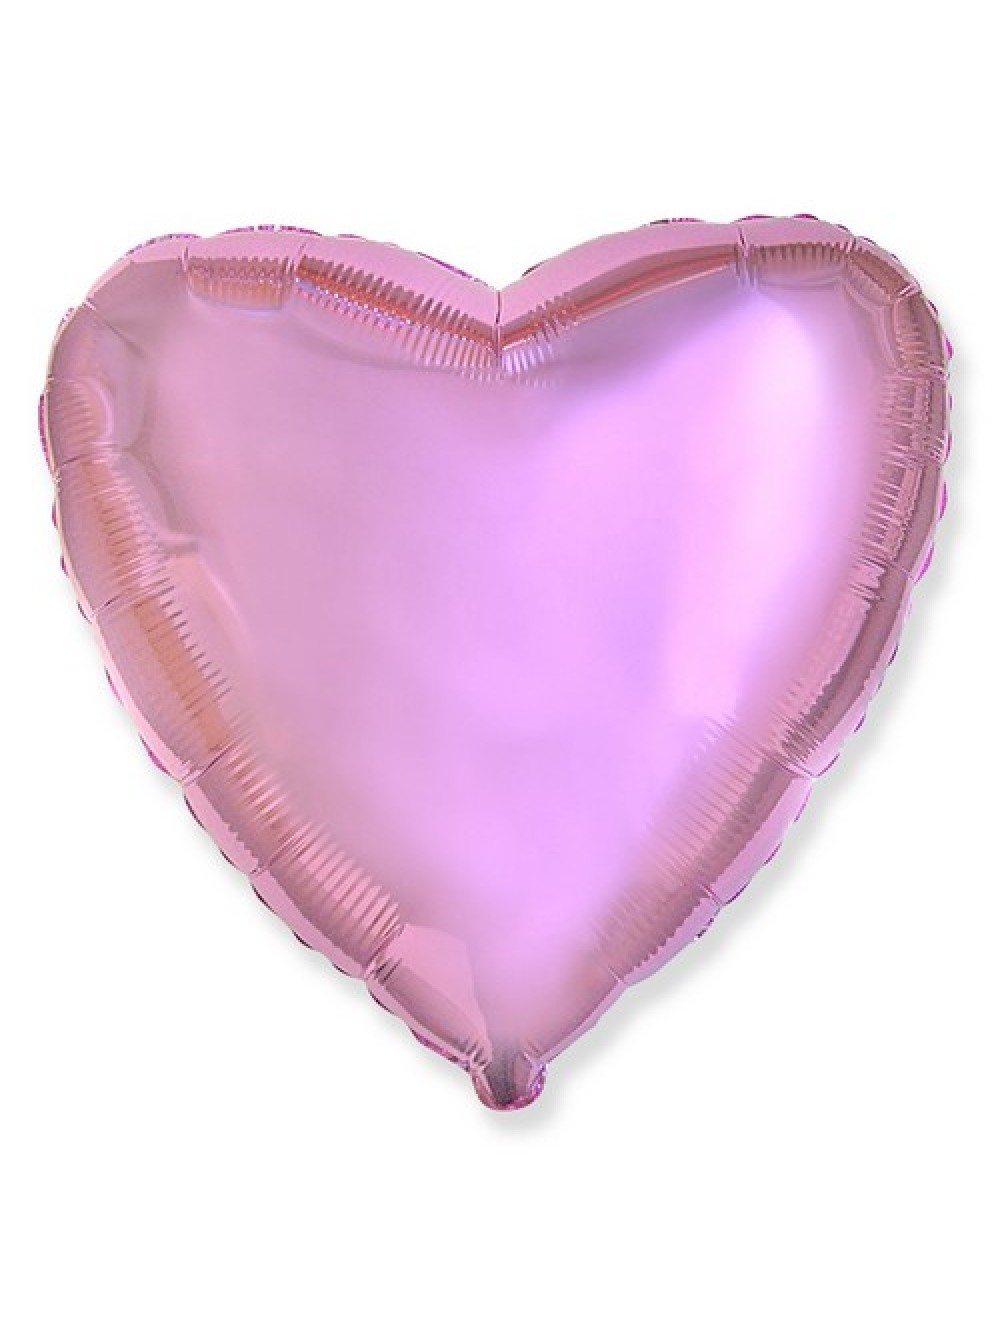 Фольгированные шары см. Шар сердце фольга 46 см розовое. Шар сердце фольга 45 см. Ф сердце (18"/46 см) сатин Lilac 1 шт. Шар фольгированный сердце "Pink" 18"/45см.